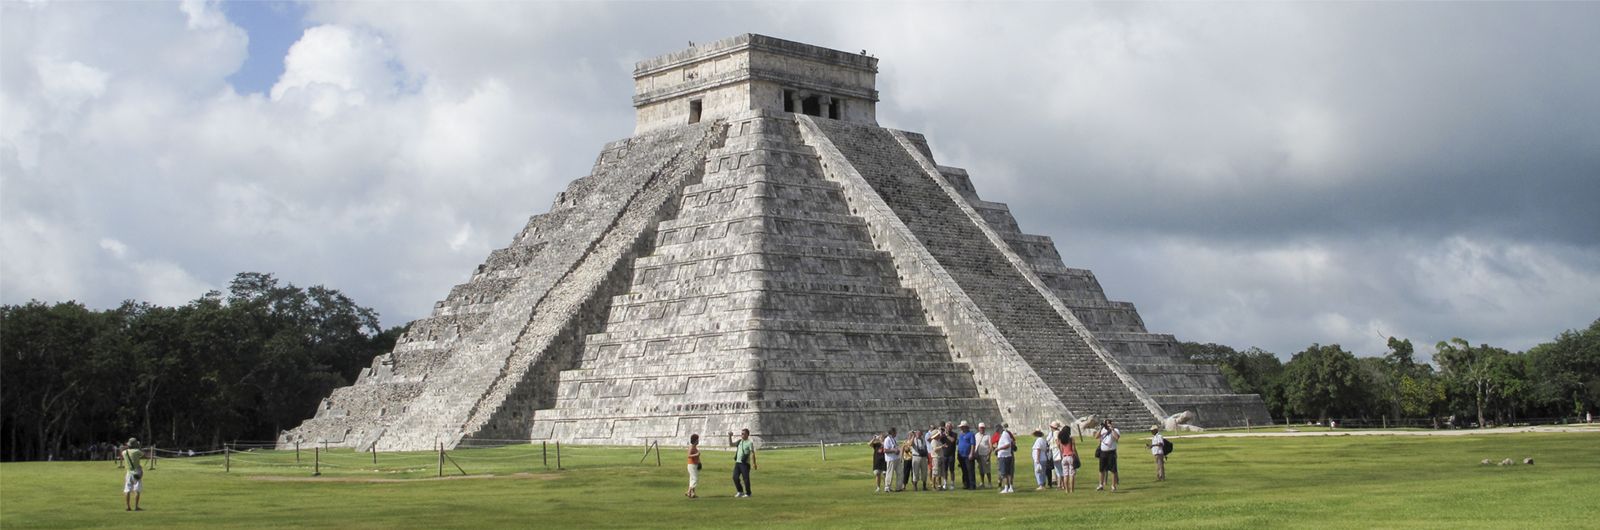 Aztecas y Mayas